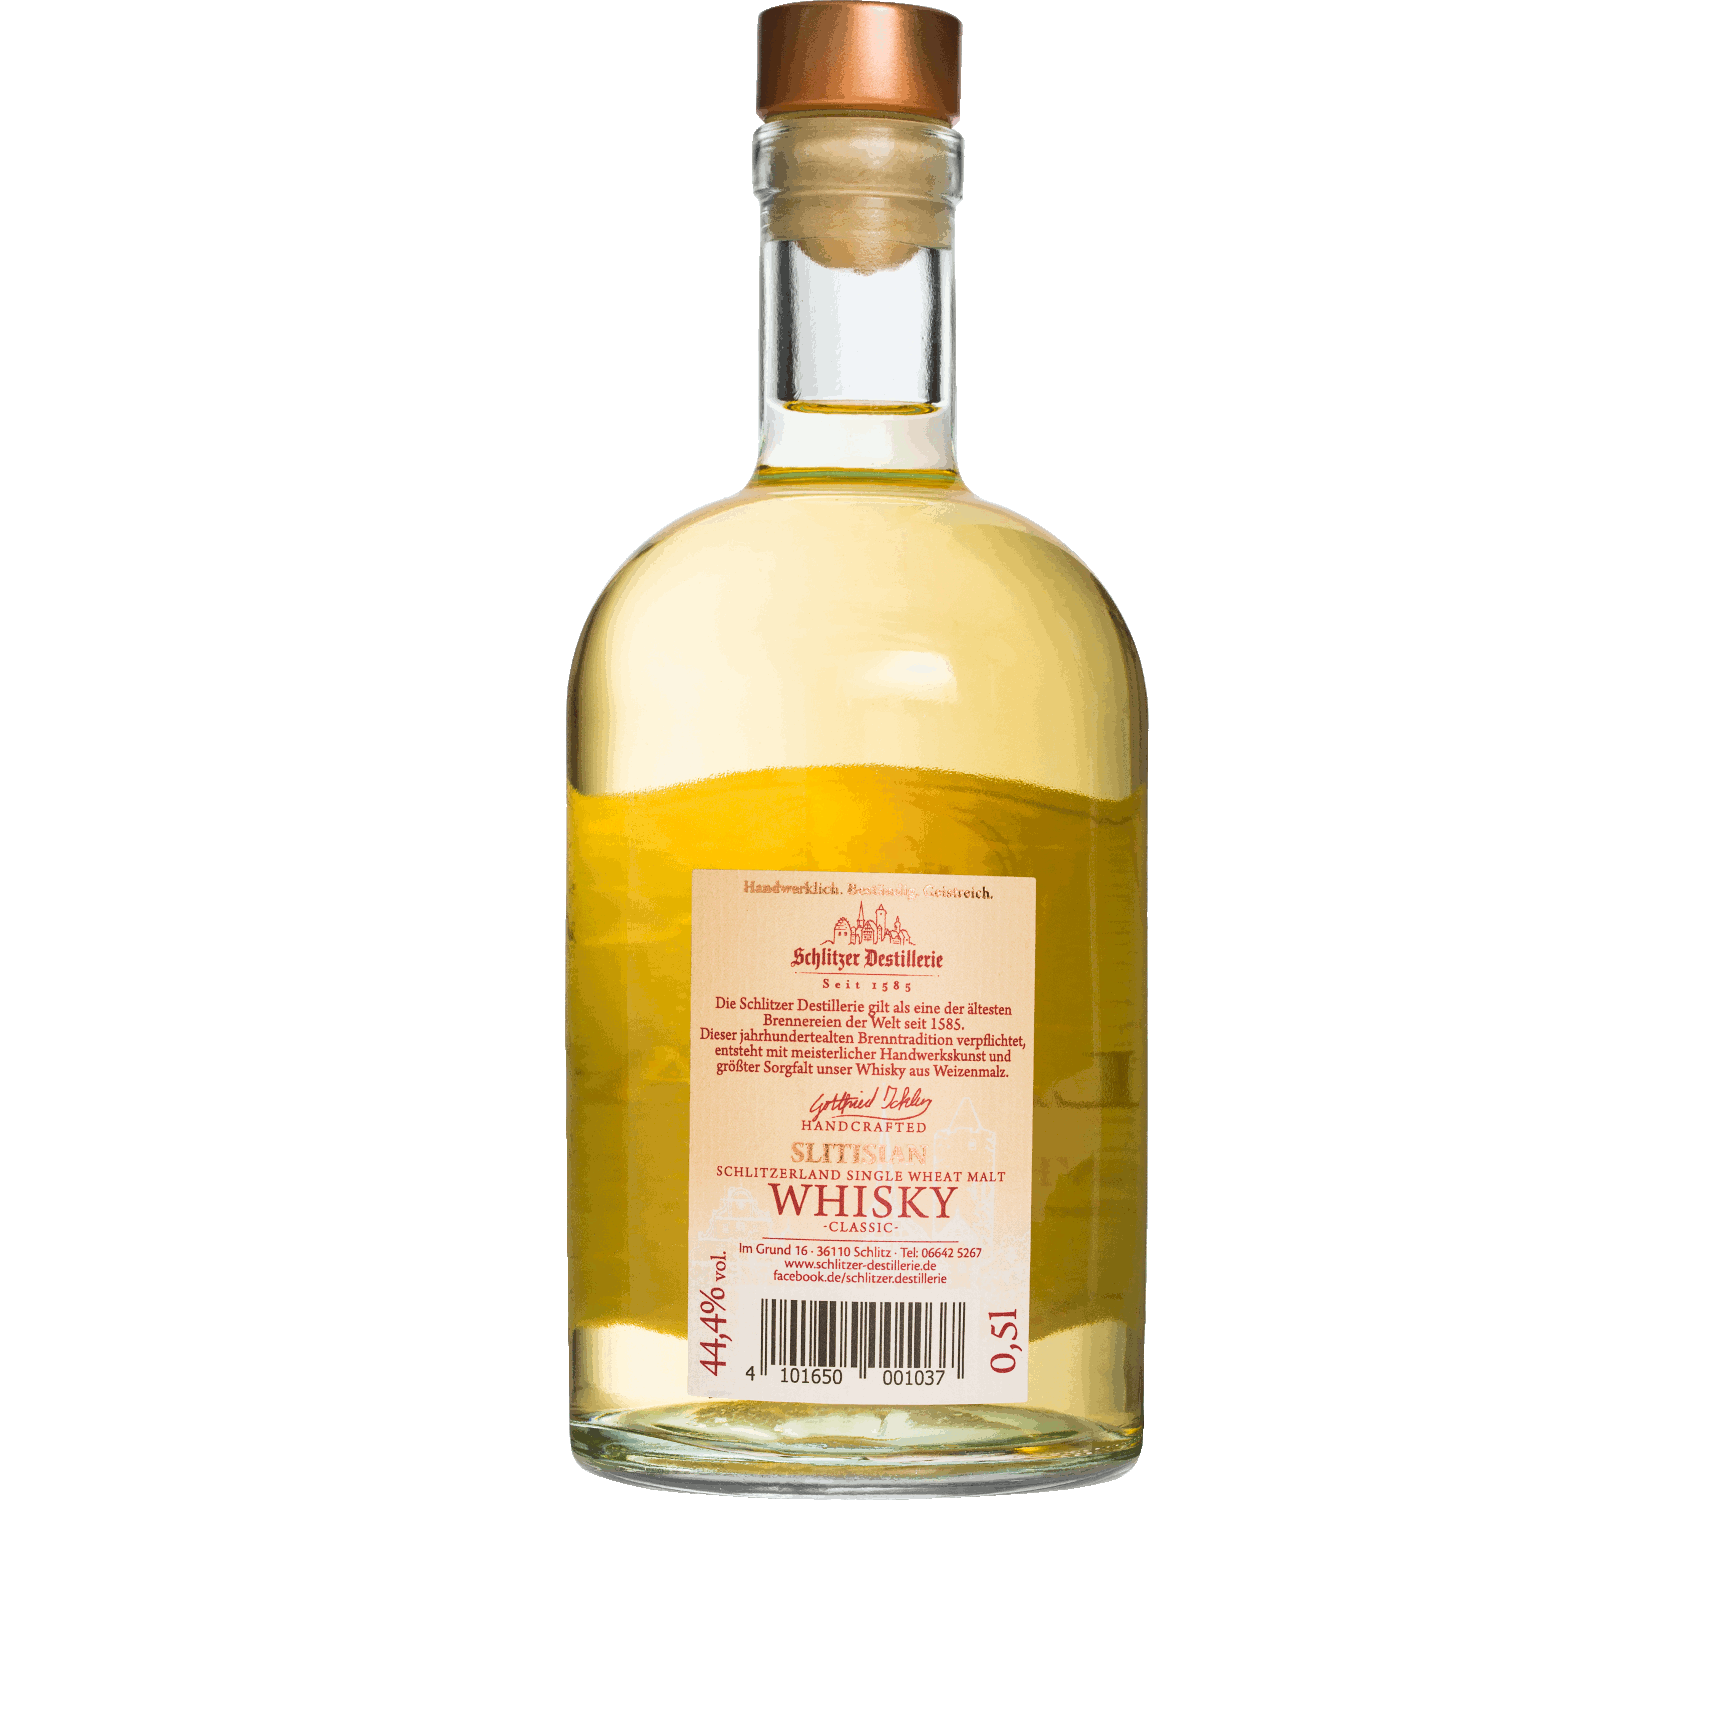 Slitisian Single Wheat Malt Whisky von Schlitzer Destillerie